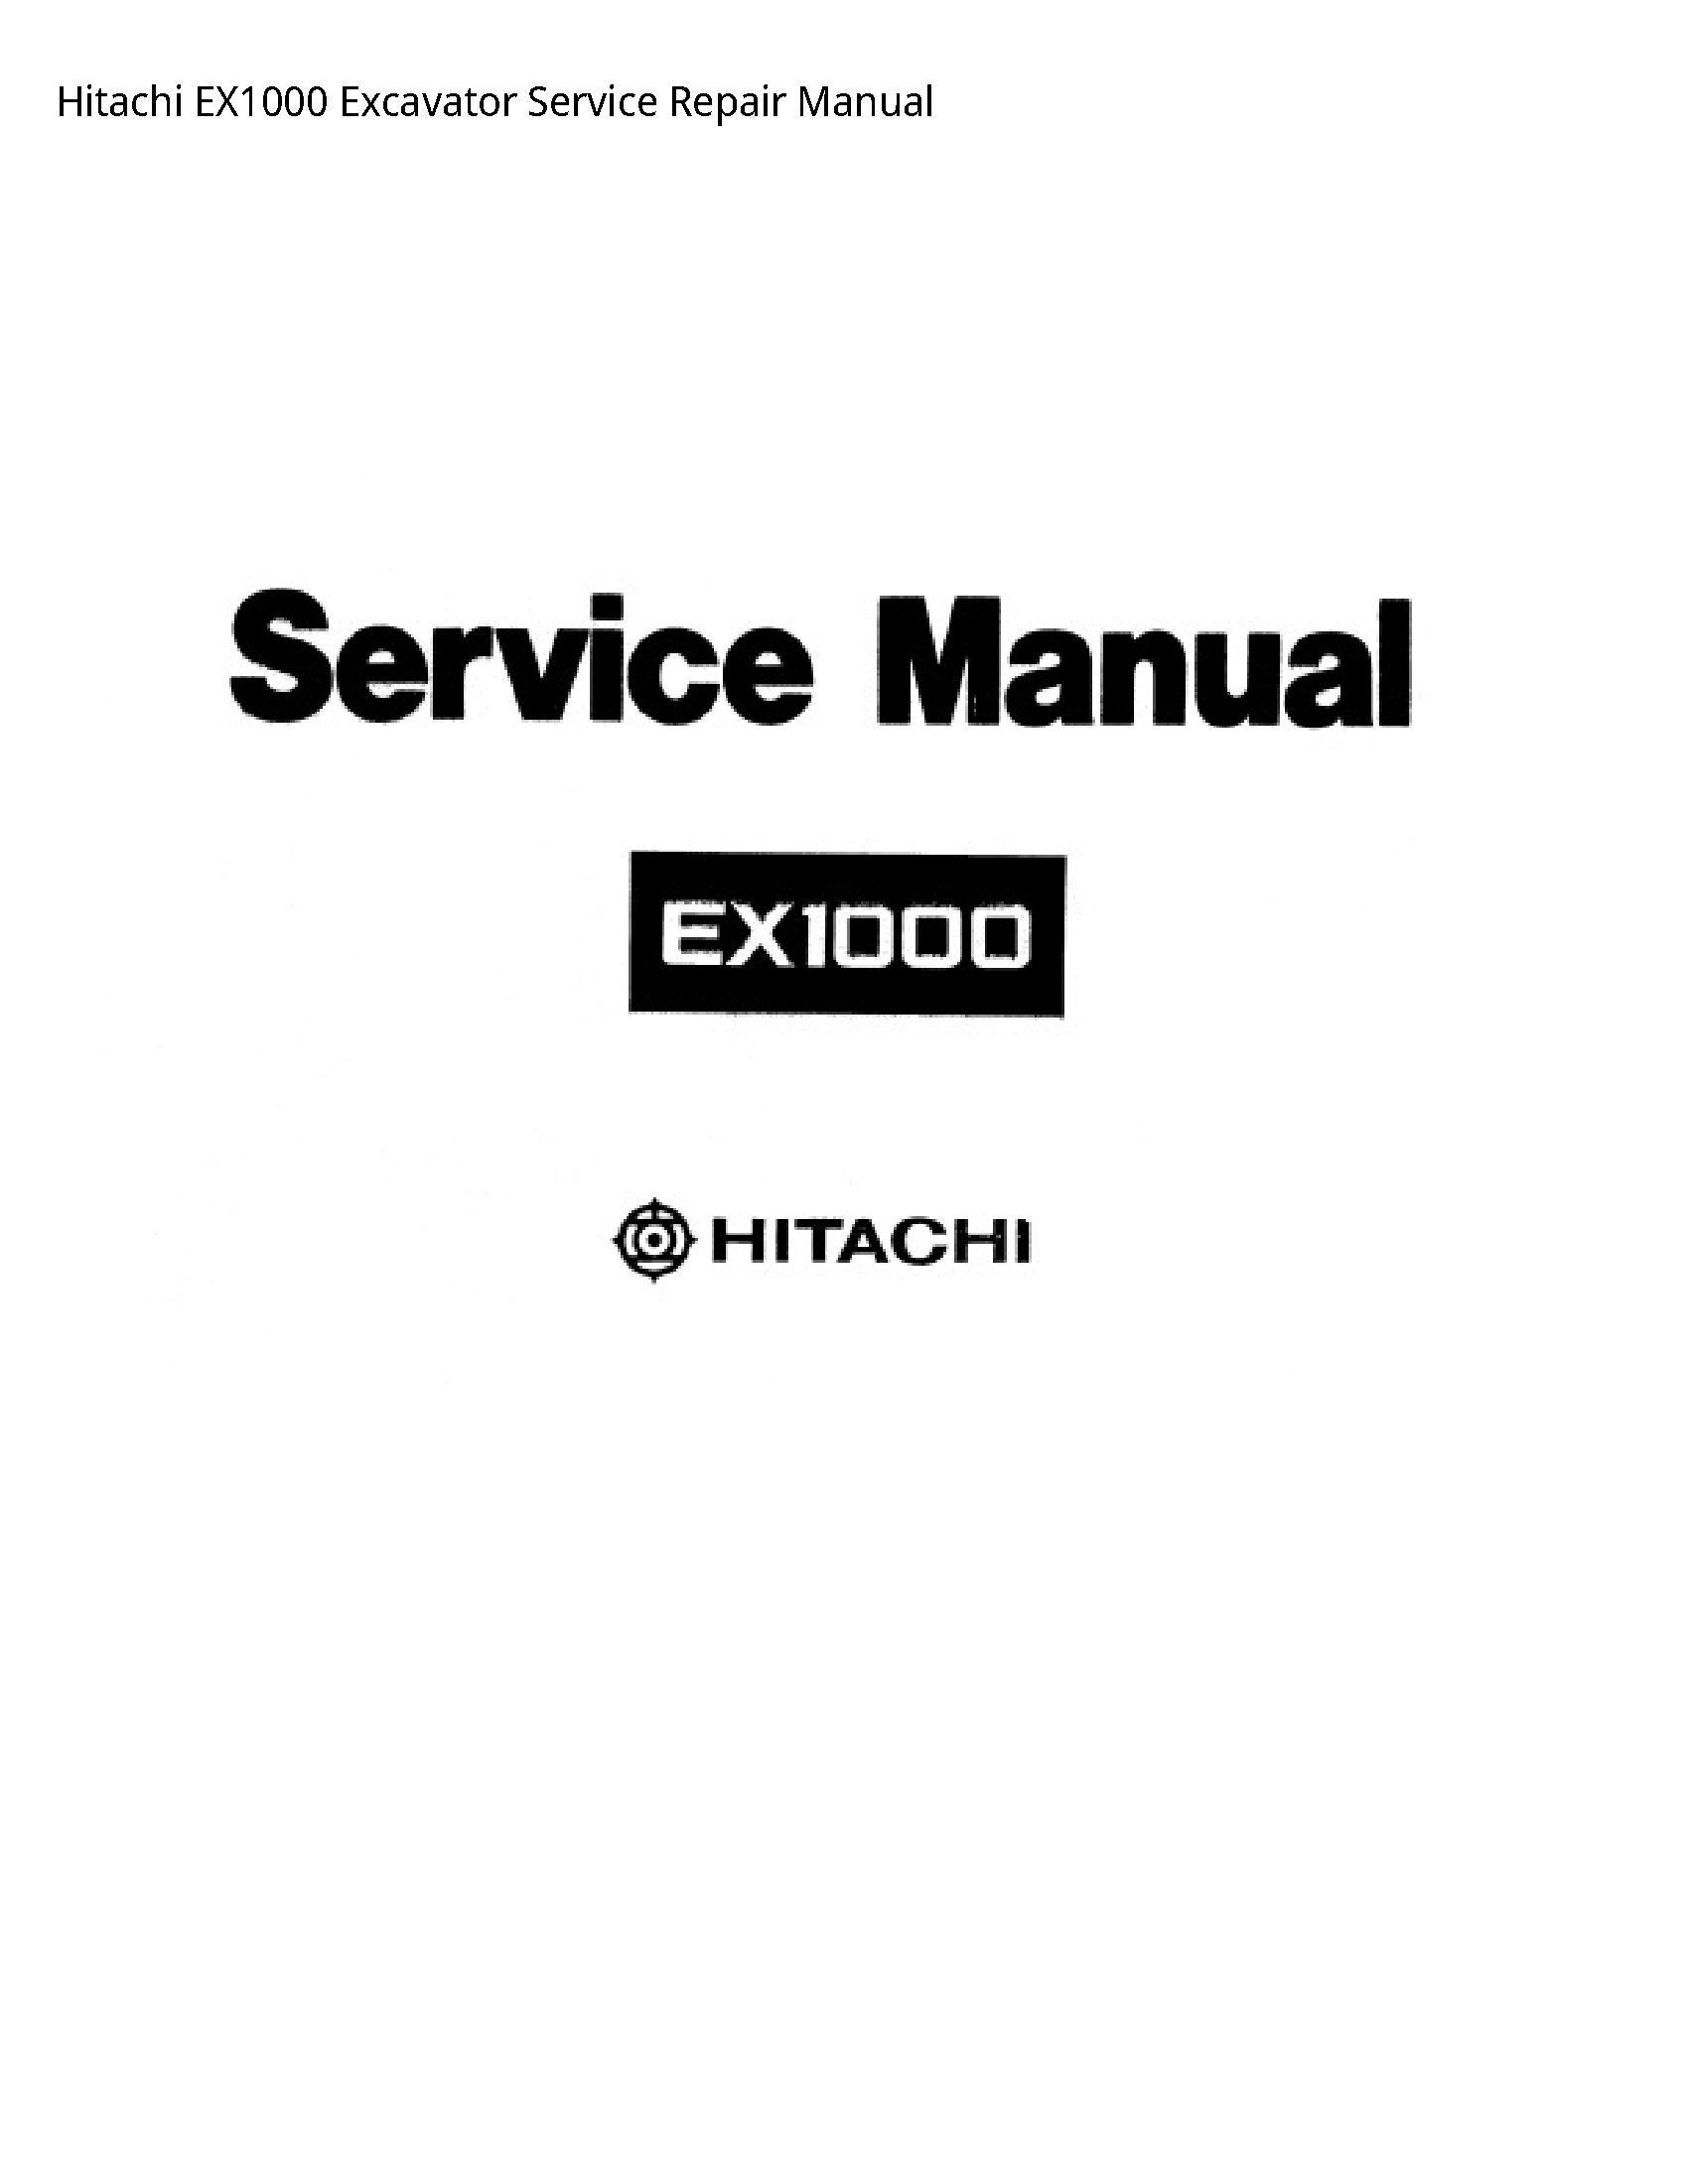 Hitachi EX1000 Excavator manual